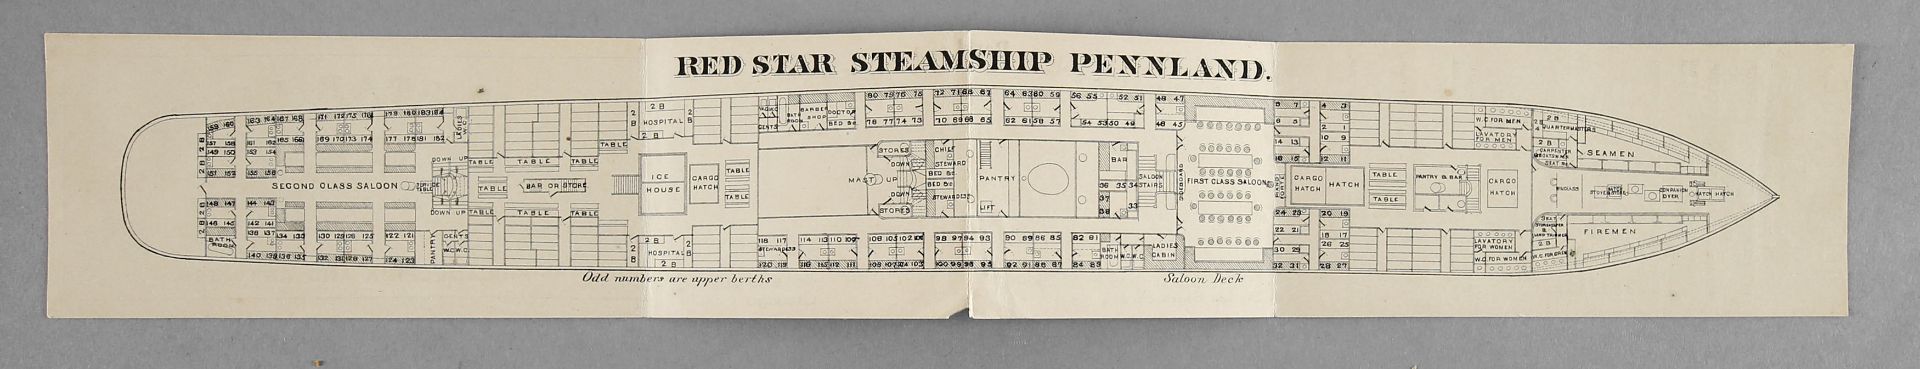 Decksplan des Passagierdampfers 'Pennland' der 'Red Star Line'